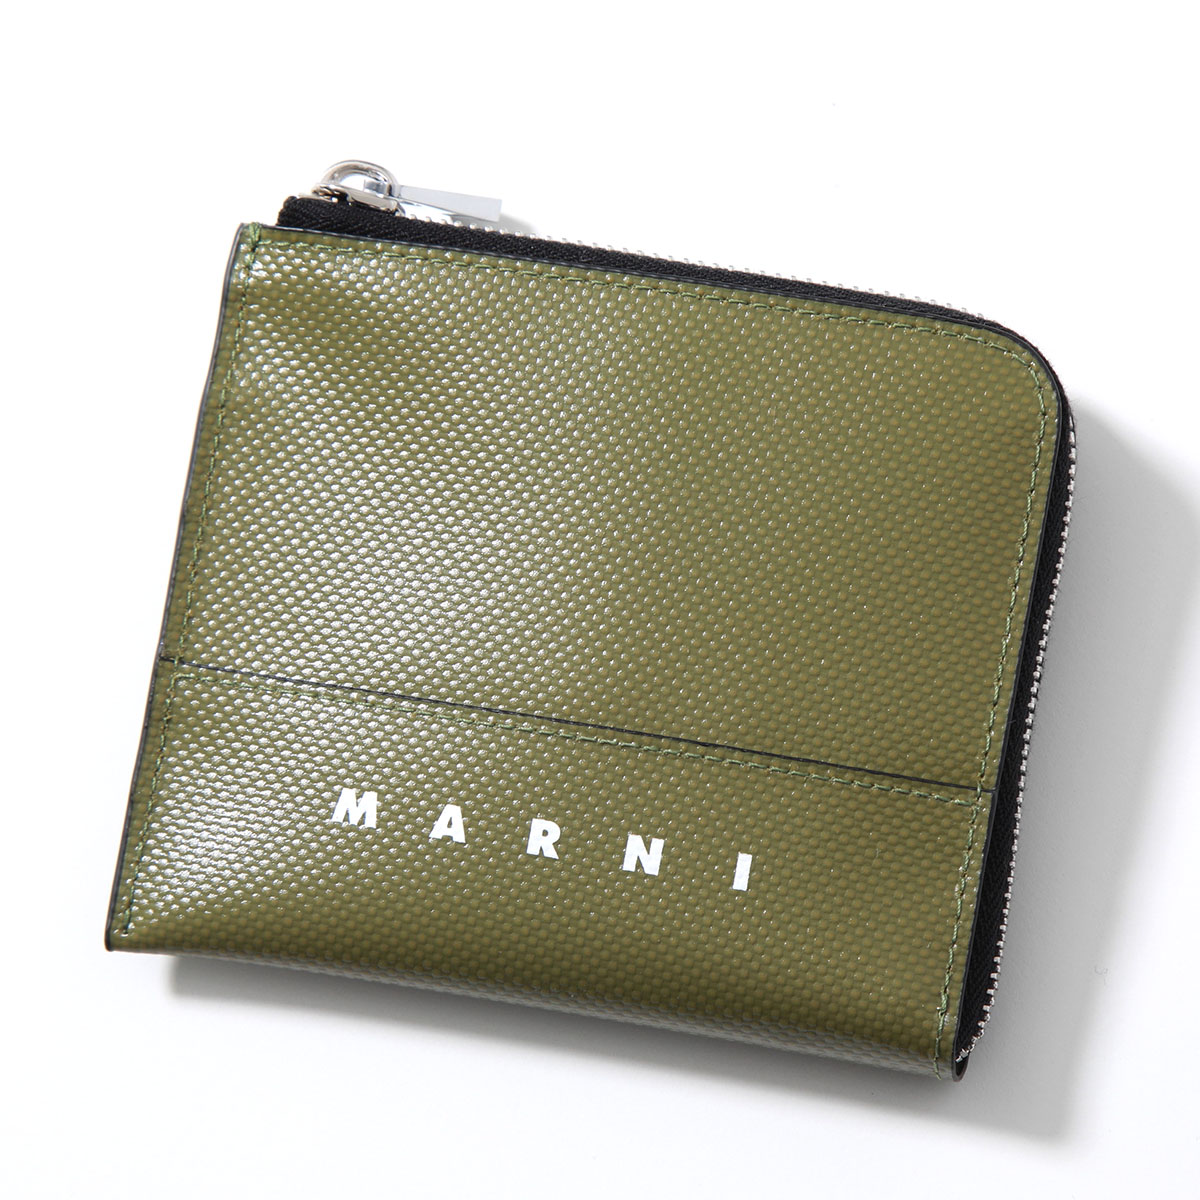 MARNI マルニ コインケース PFMI0075A0 P5769 メンズ ミニ財布 カードケース ...